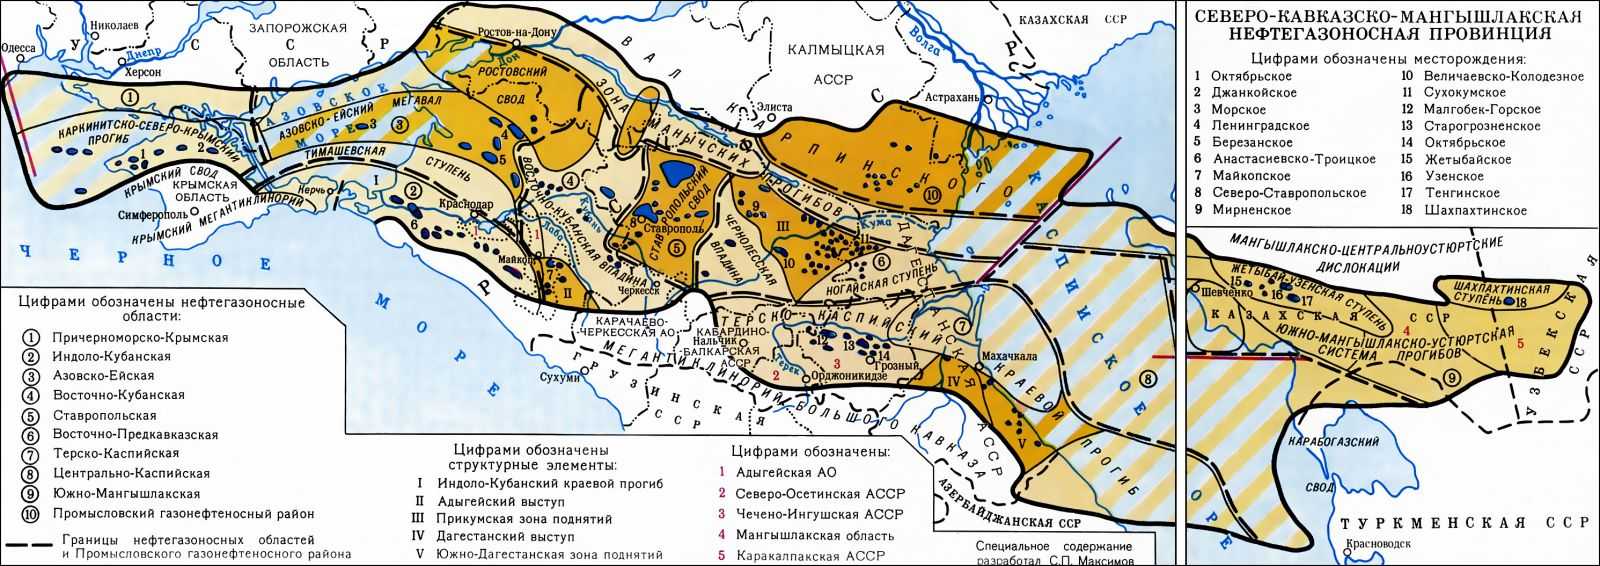 Северо-Кавказско-Мангышлакская нефтегазоносная провинция